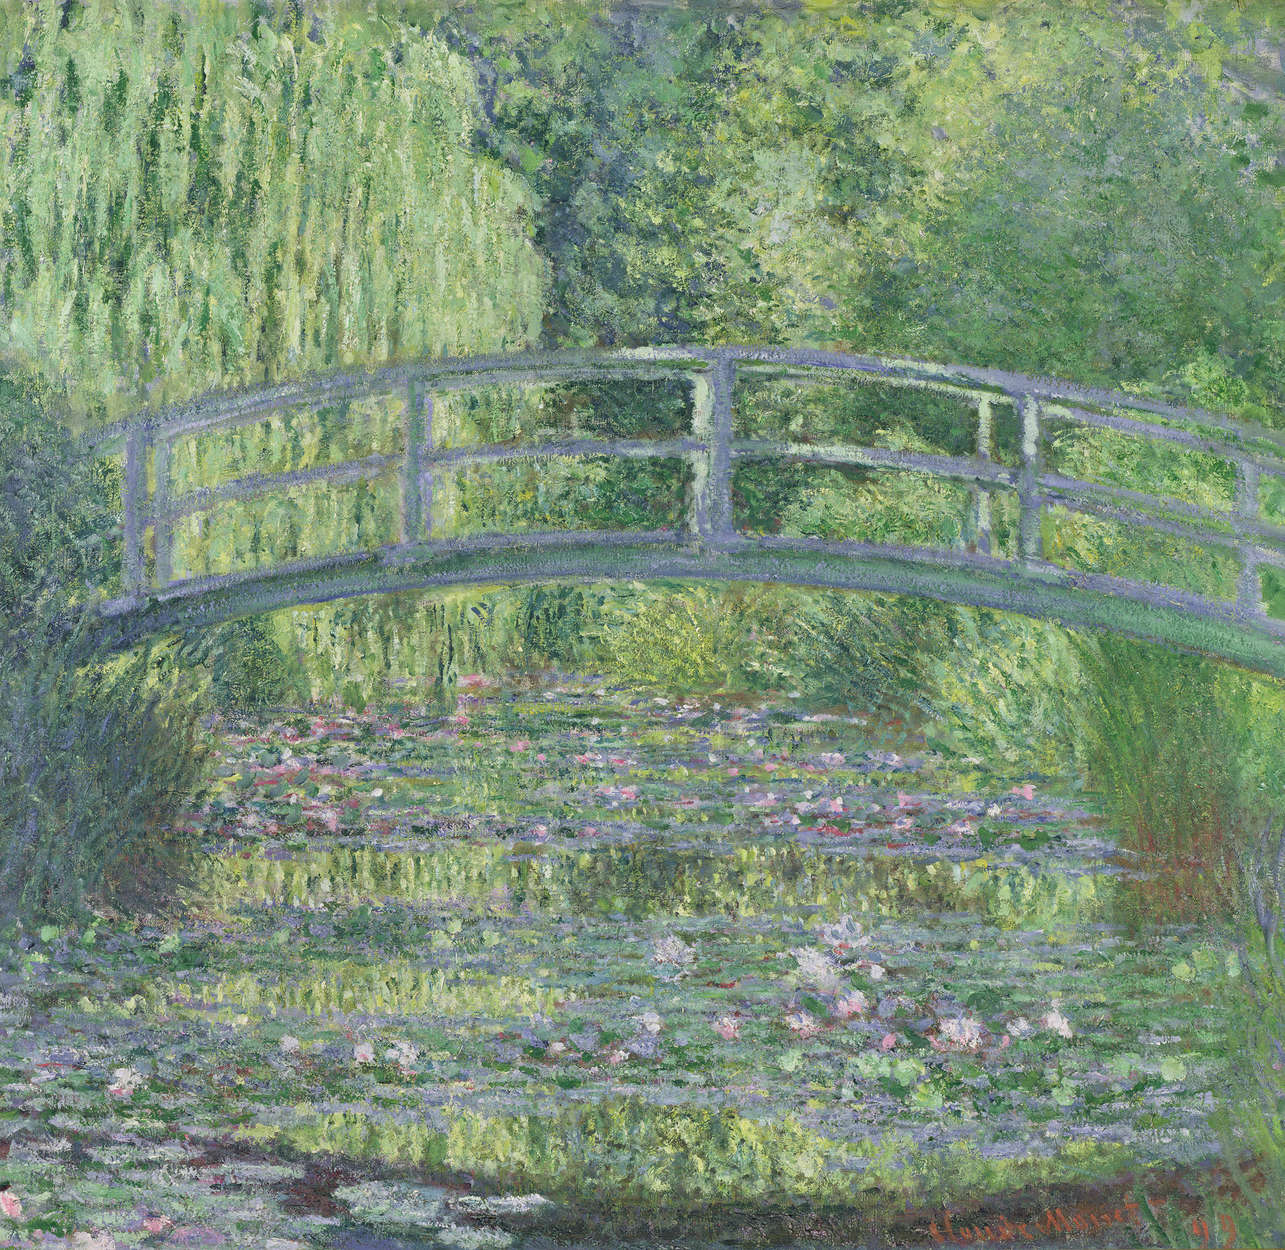             Fototapete "Der Seerosenteich: Grüne Harmonie" von Claude Monet
        